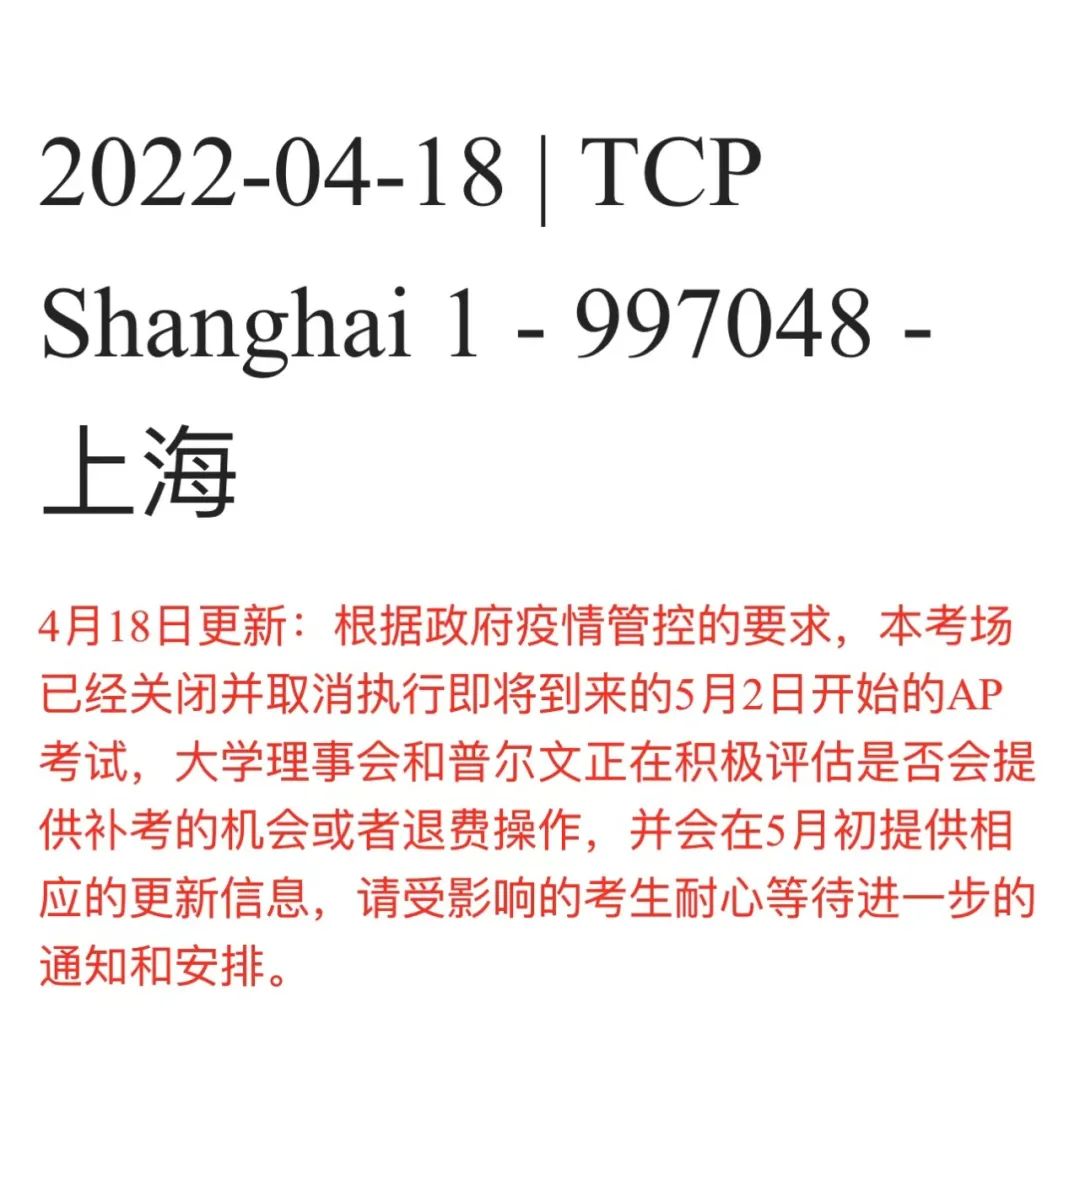 最新! 正如预料, 上海苏州地区AP考试全部取消, 全国各地升级入场防控要求!